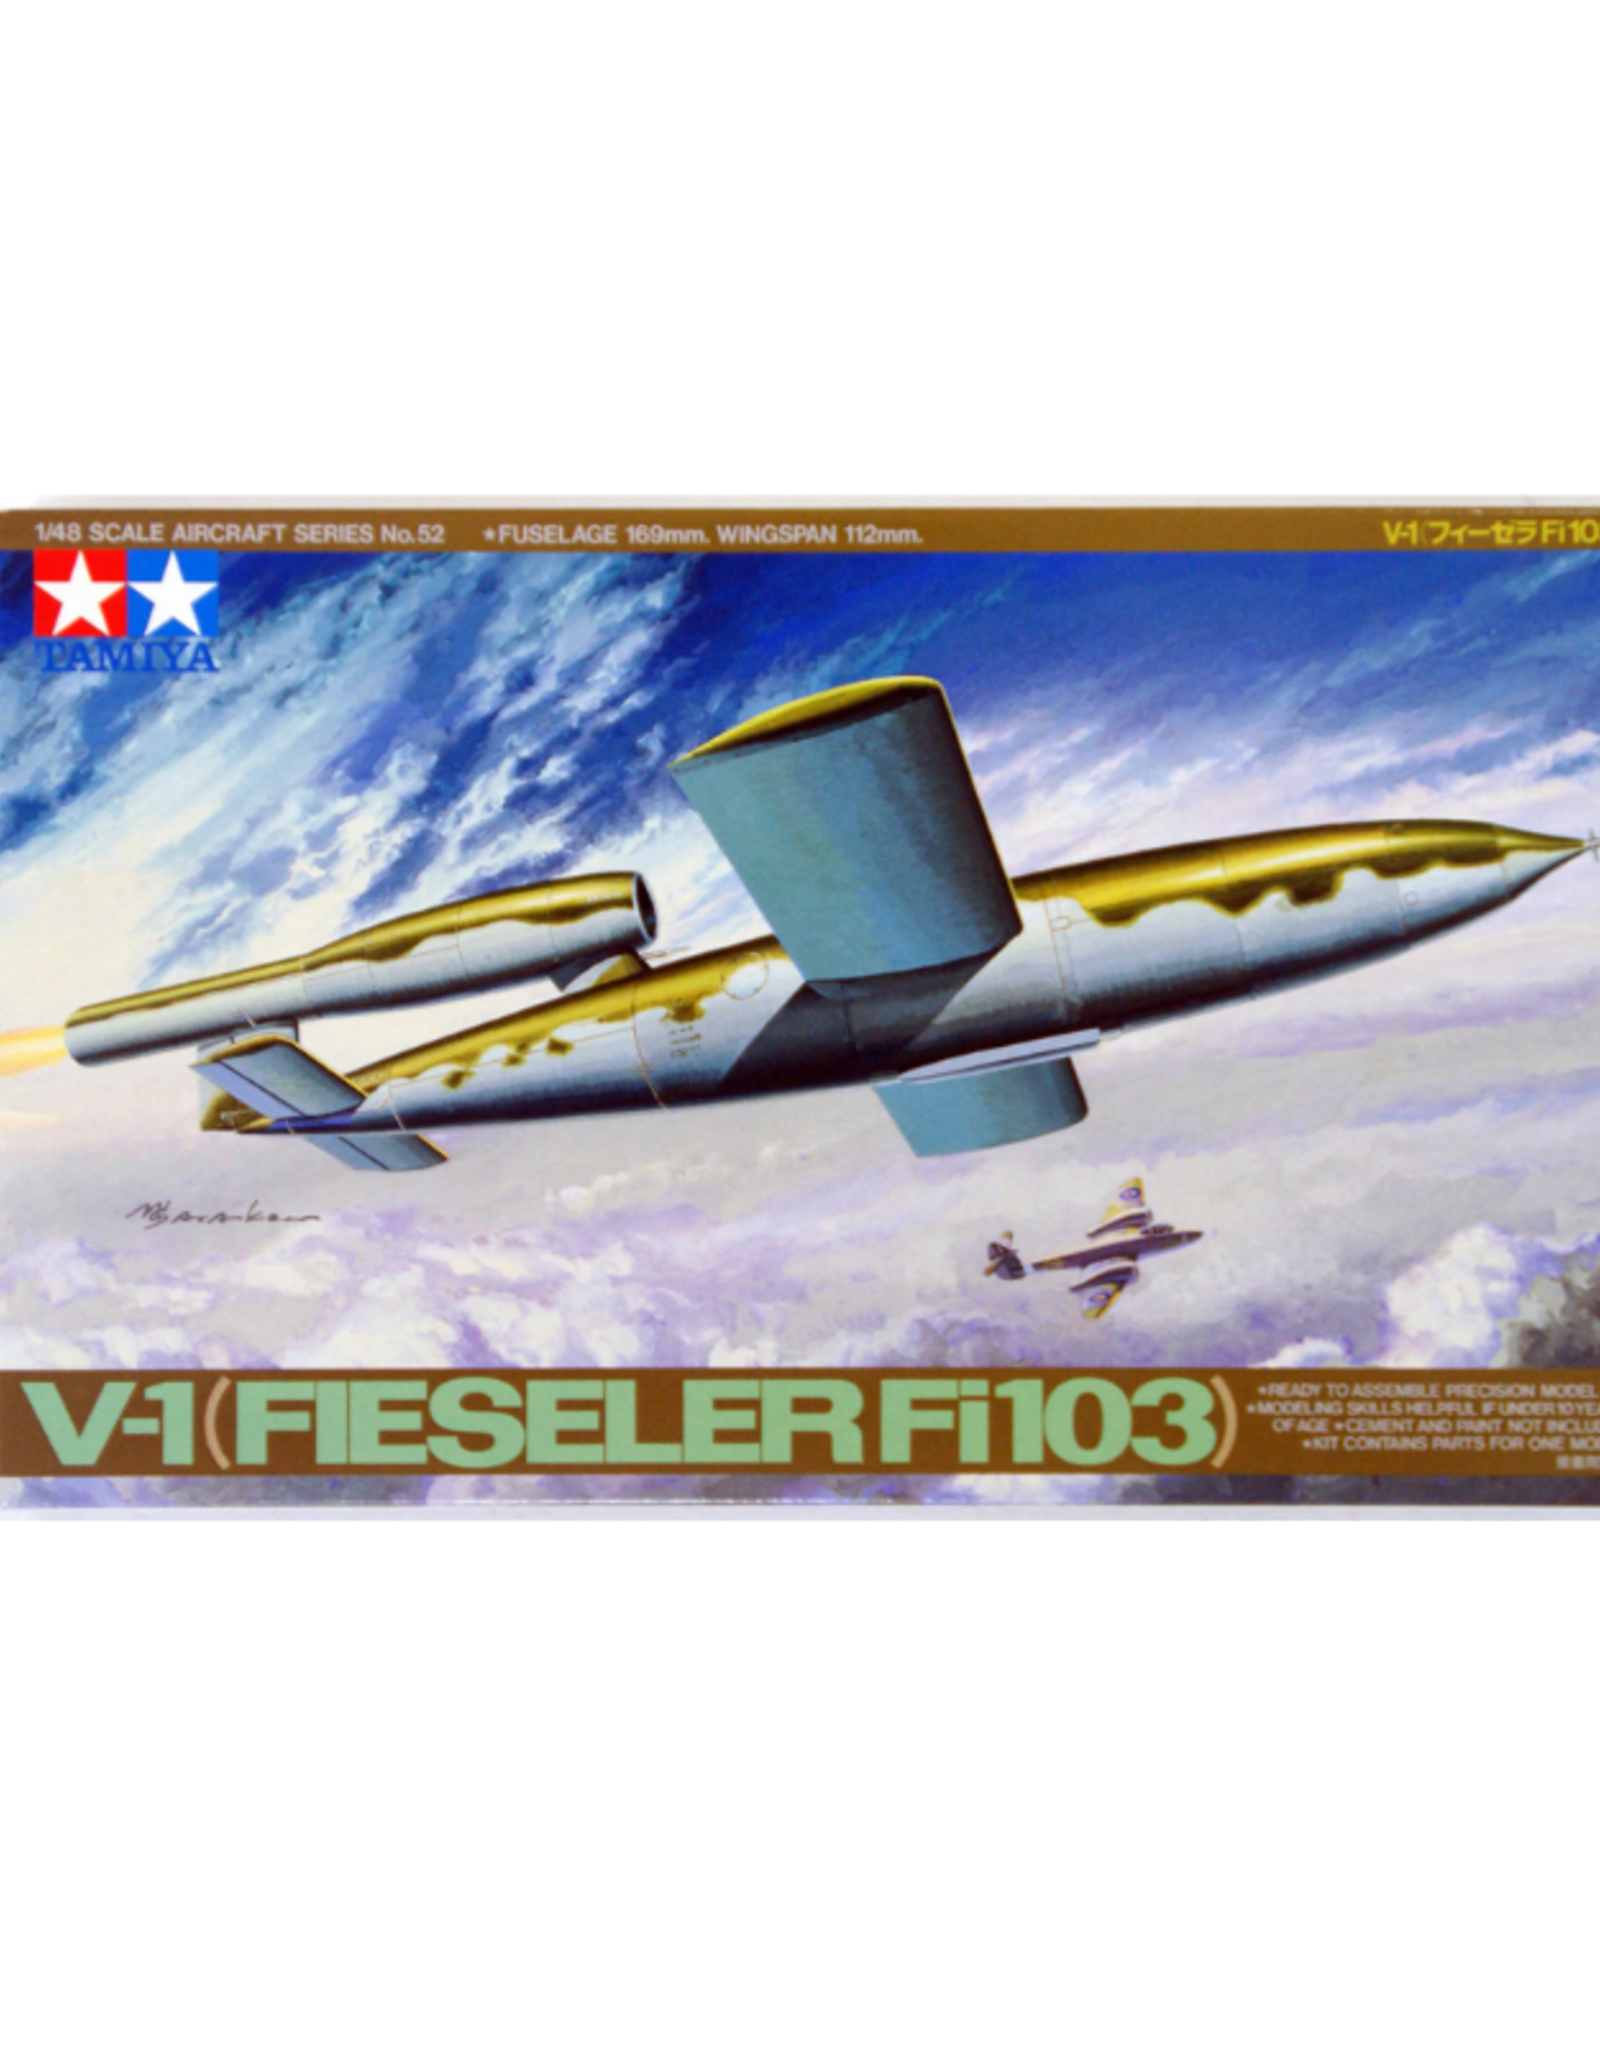 V-1 (Fieseler Fi103)